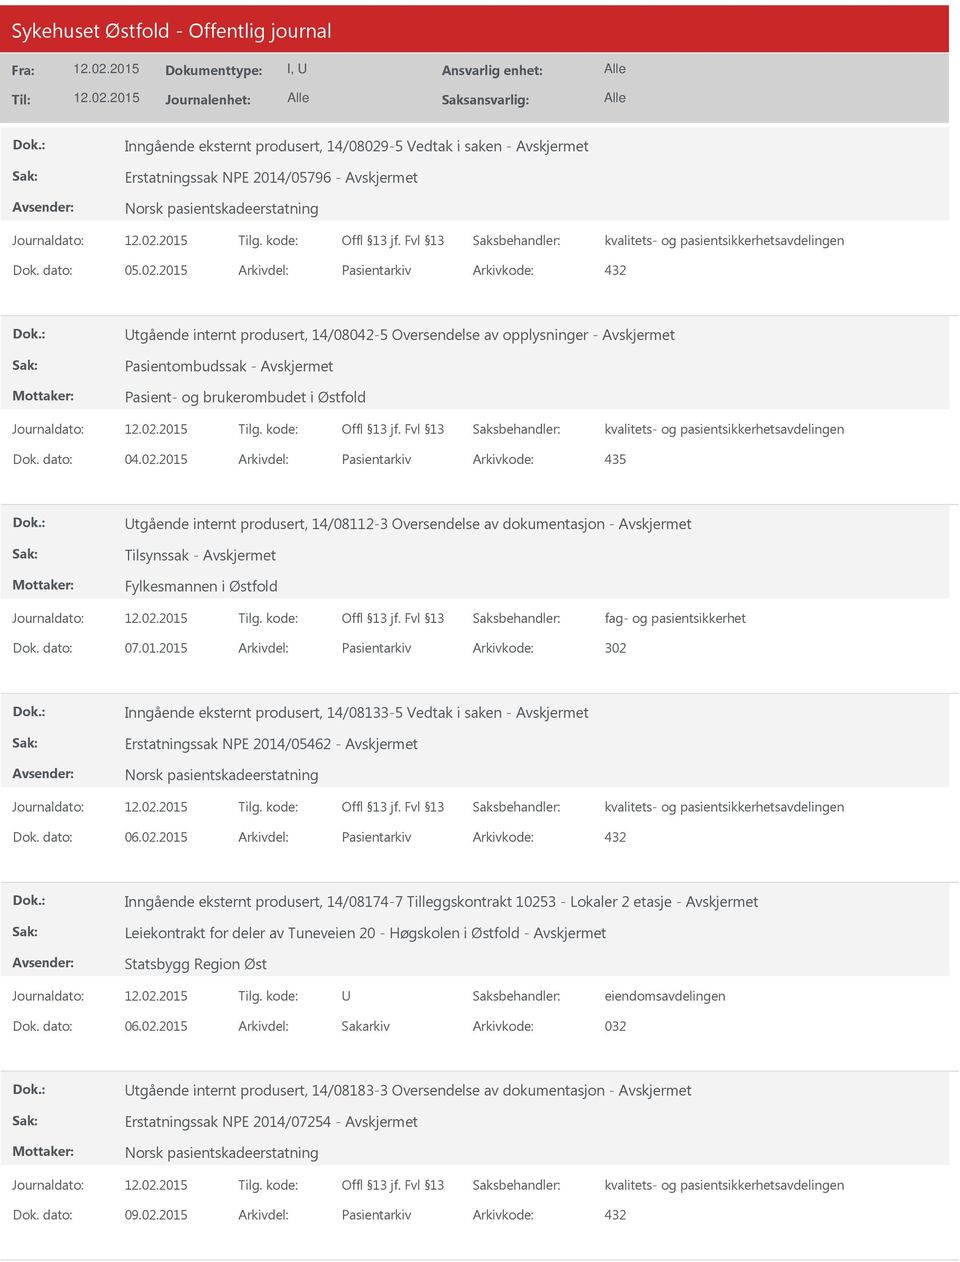 2015 Arkivdel: Pasientarkiv Arkivkode: 432 tgående internt produsert, 14/08042-5 Oversendelse av opplysninger - Pasientombudssak - Pasient- og brukerombudet i Østfold Dok. dato: 04.02.